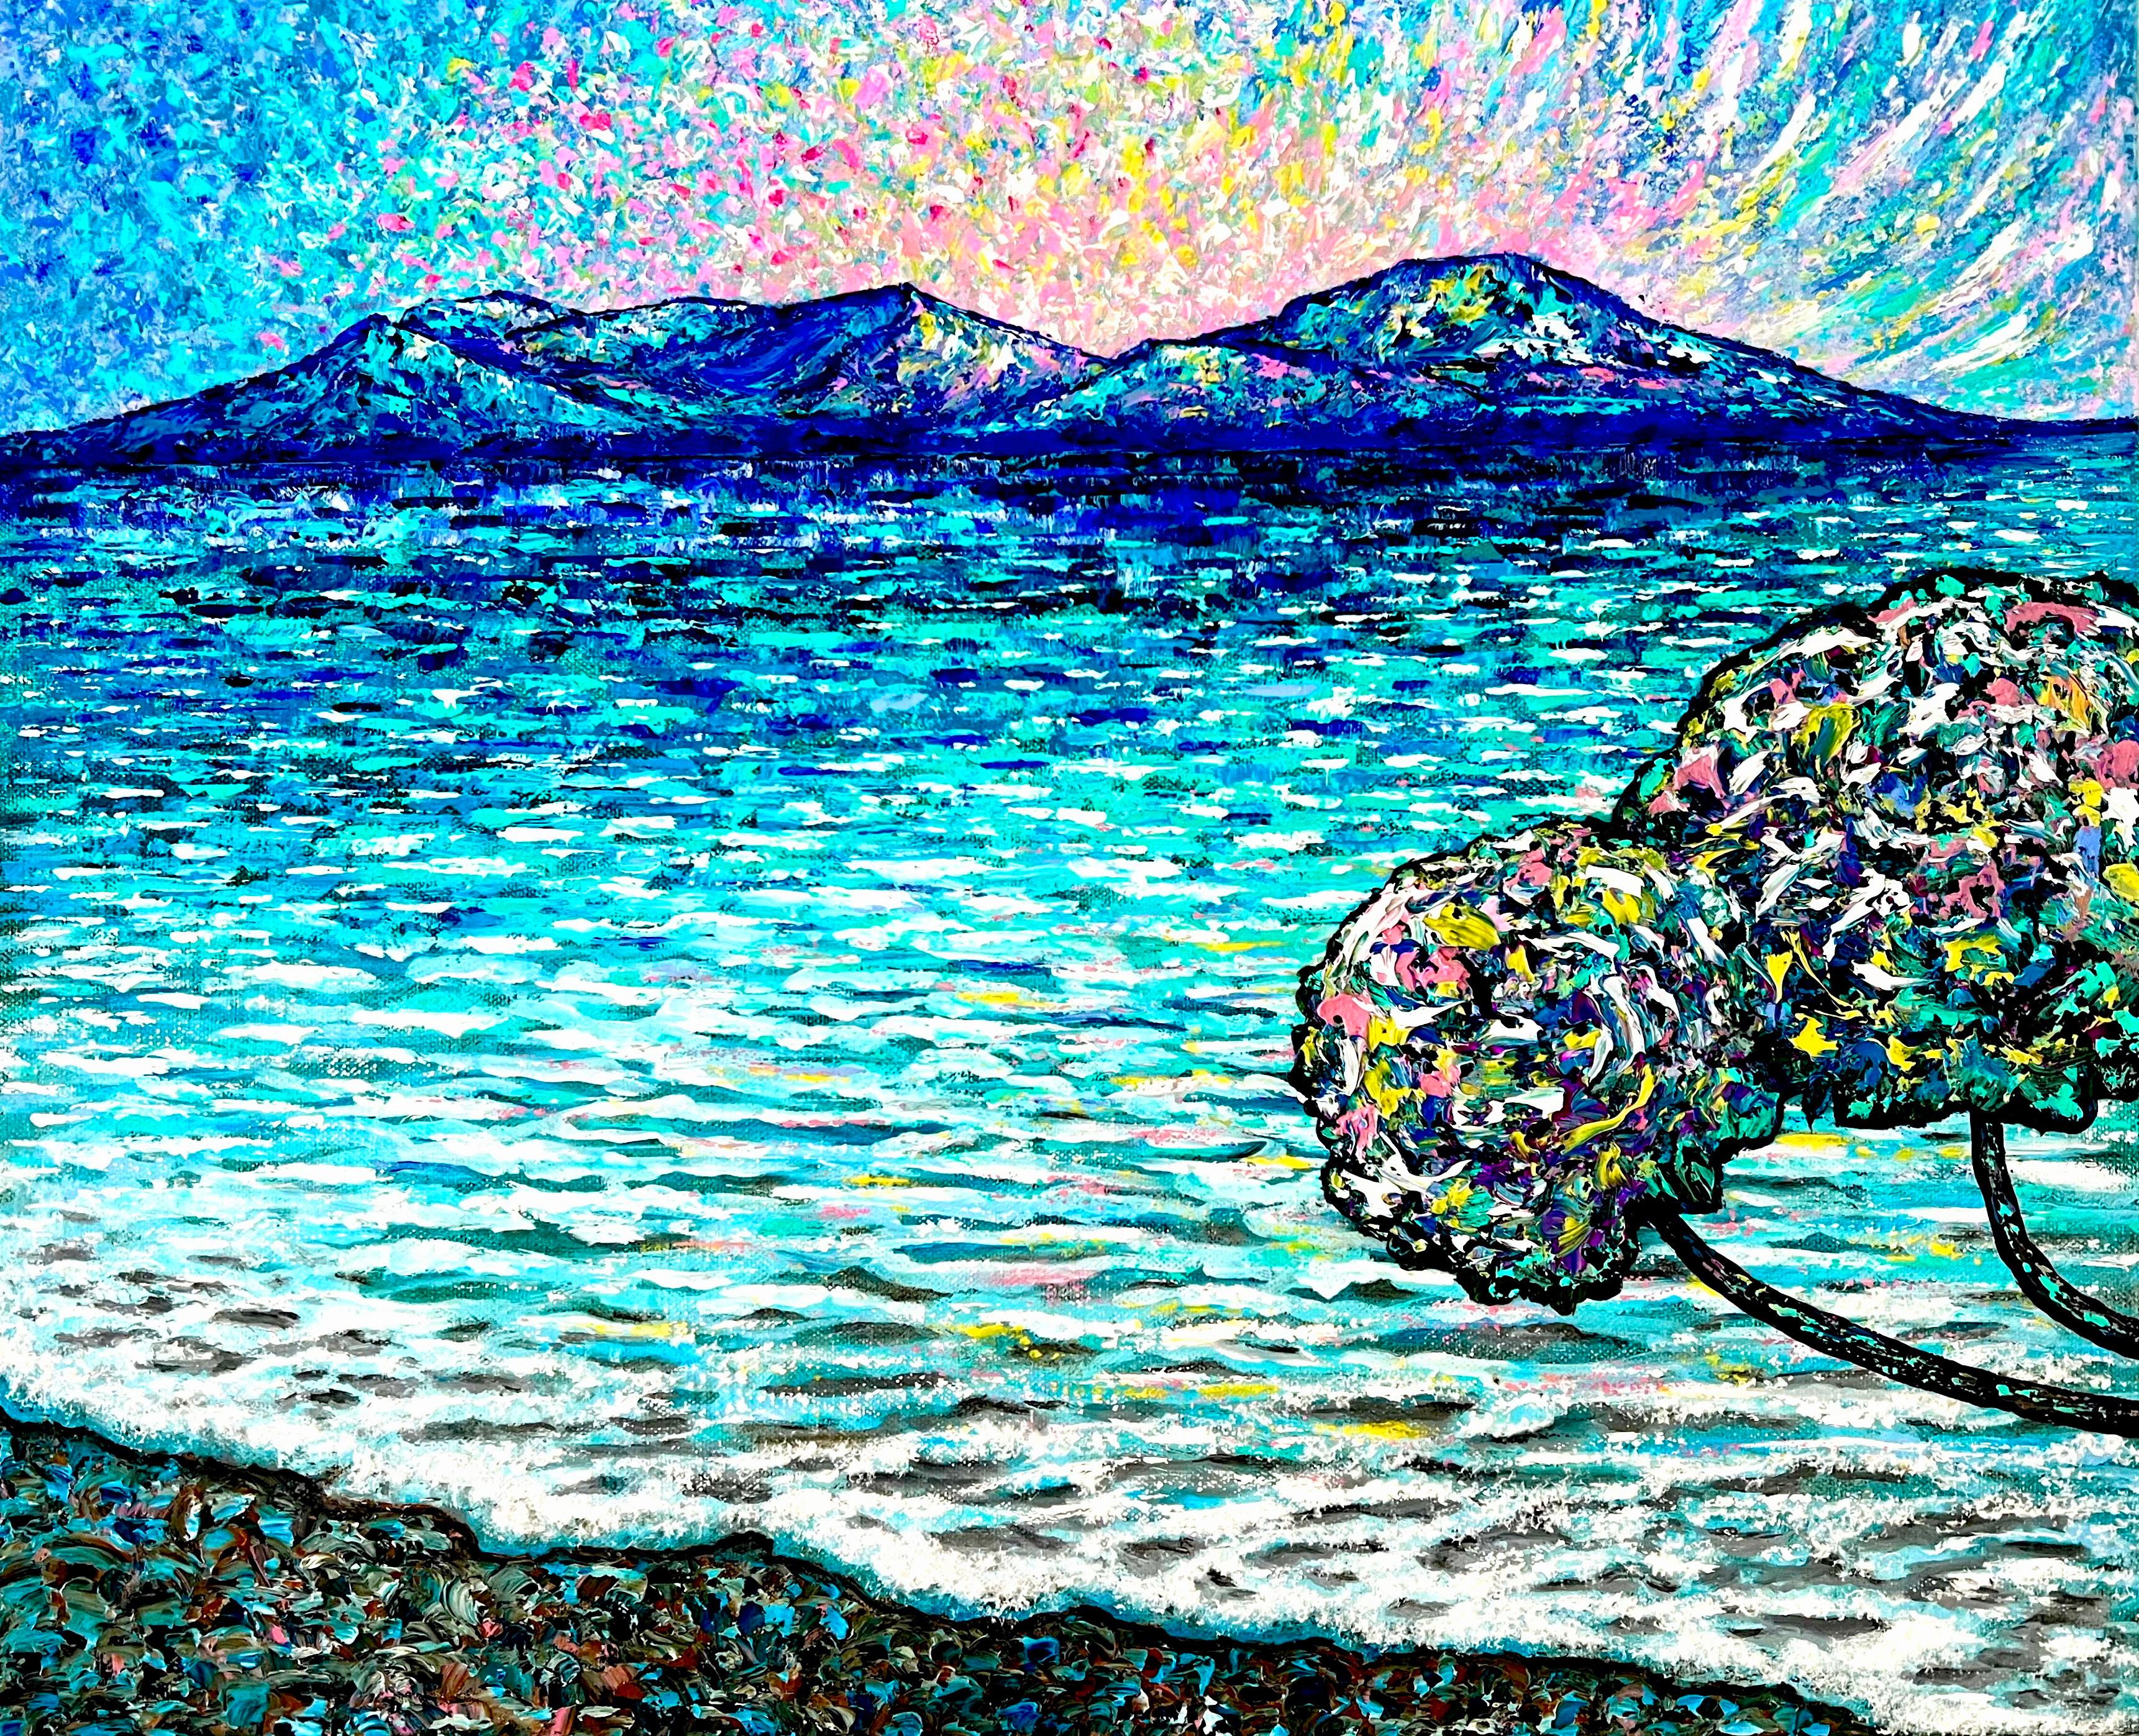    L'eau des mers guérit TOUT LE BIEN !))) Peinture à l'huile abstraite impressionniste intérieure de l'intérieur. 